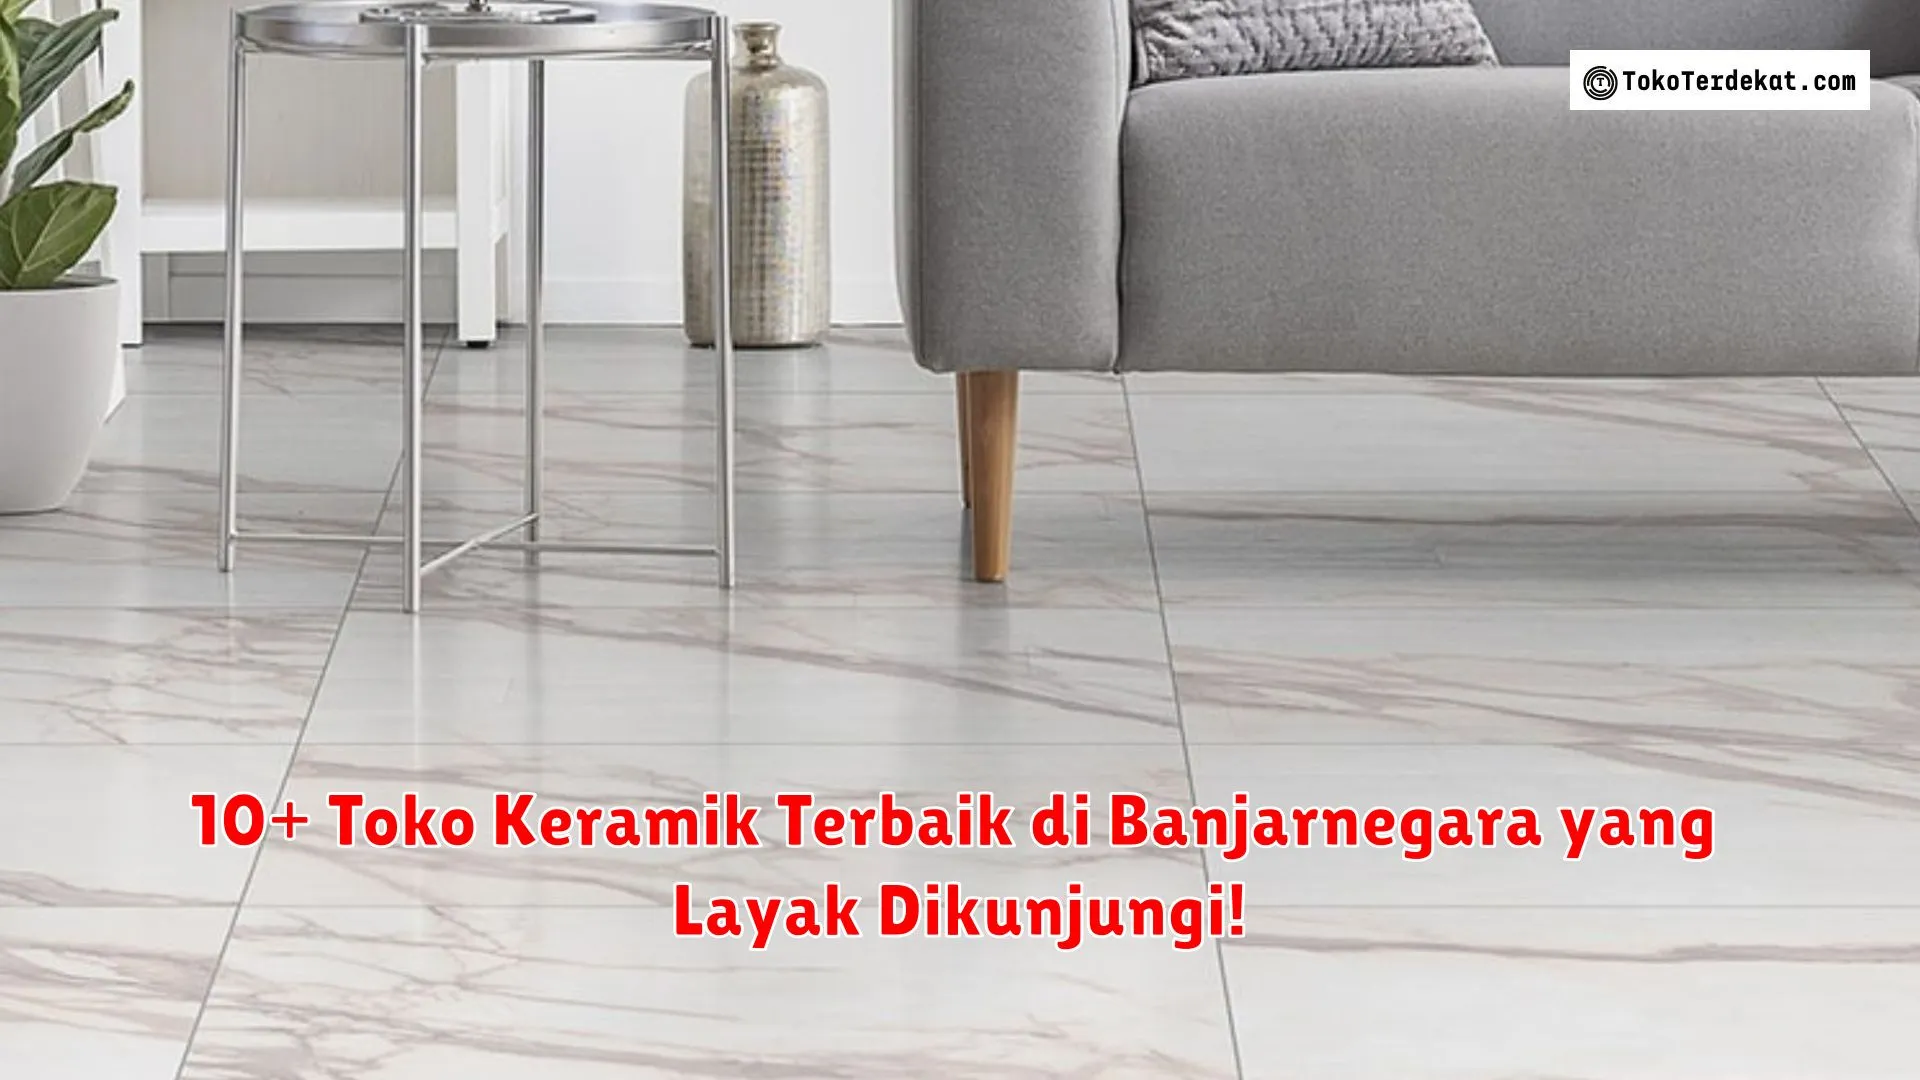 10+ Toko Keramik Terbaik di Banjarnegara yang Layak Dikunjungi!